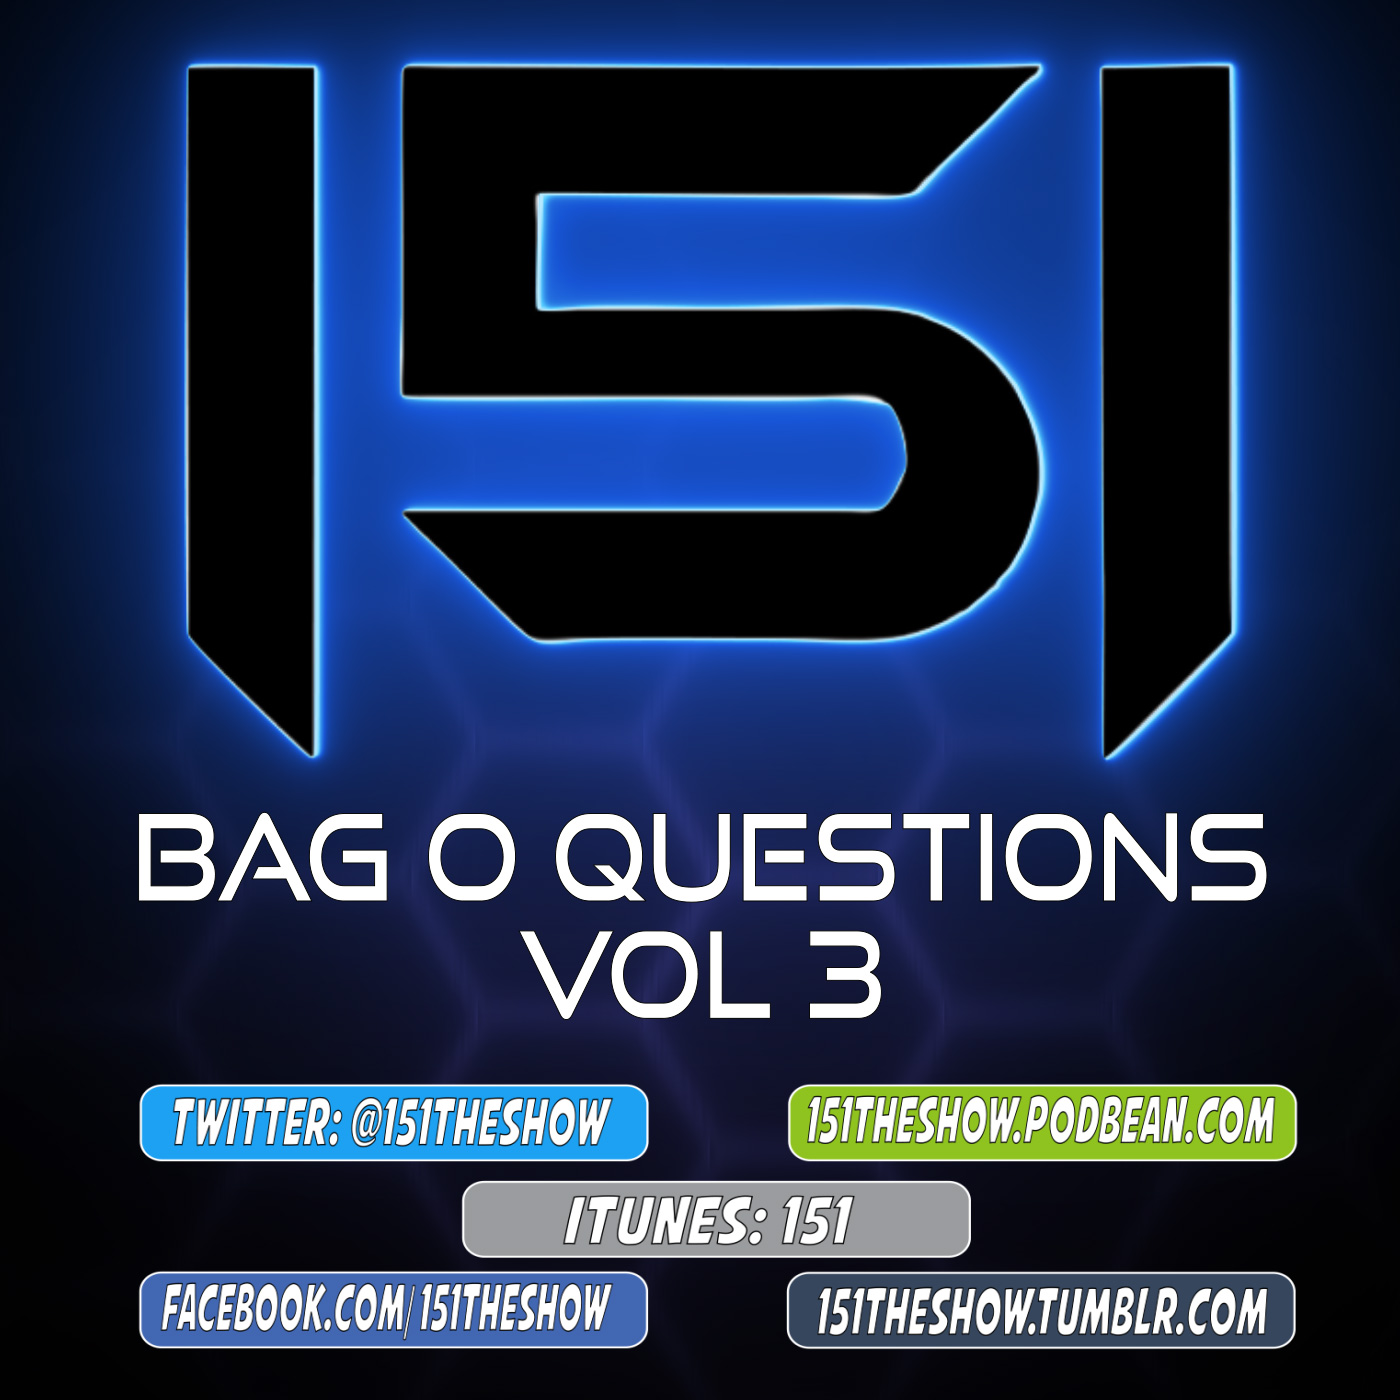 Bag O Questions Vol 3